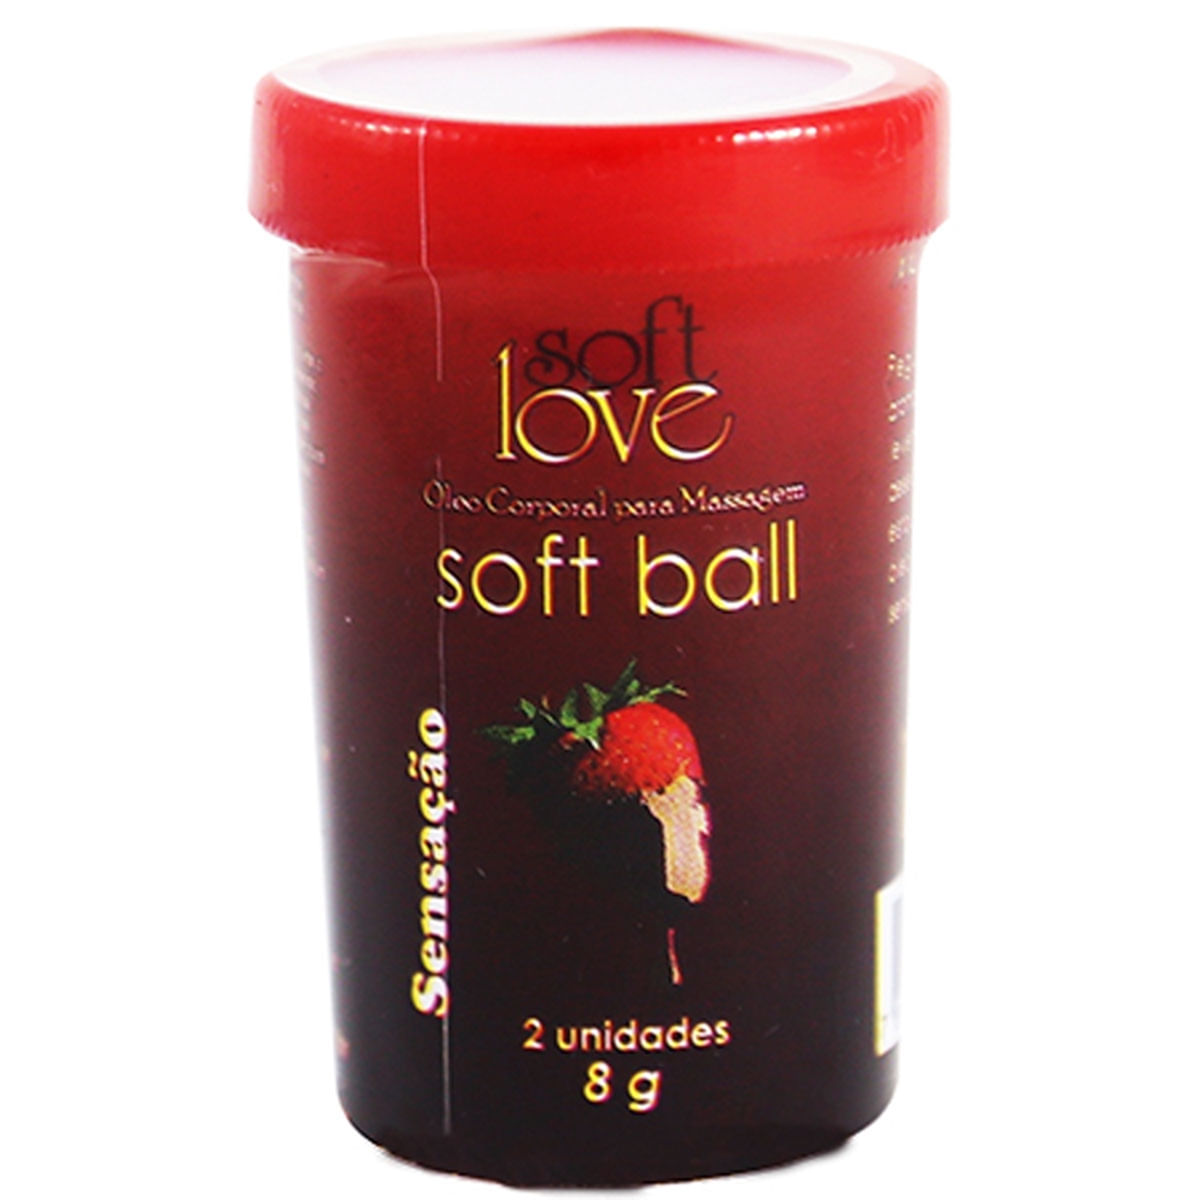 Óleo Corporal para Massagem Soft Ball Sensação 2und Soft Love